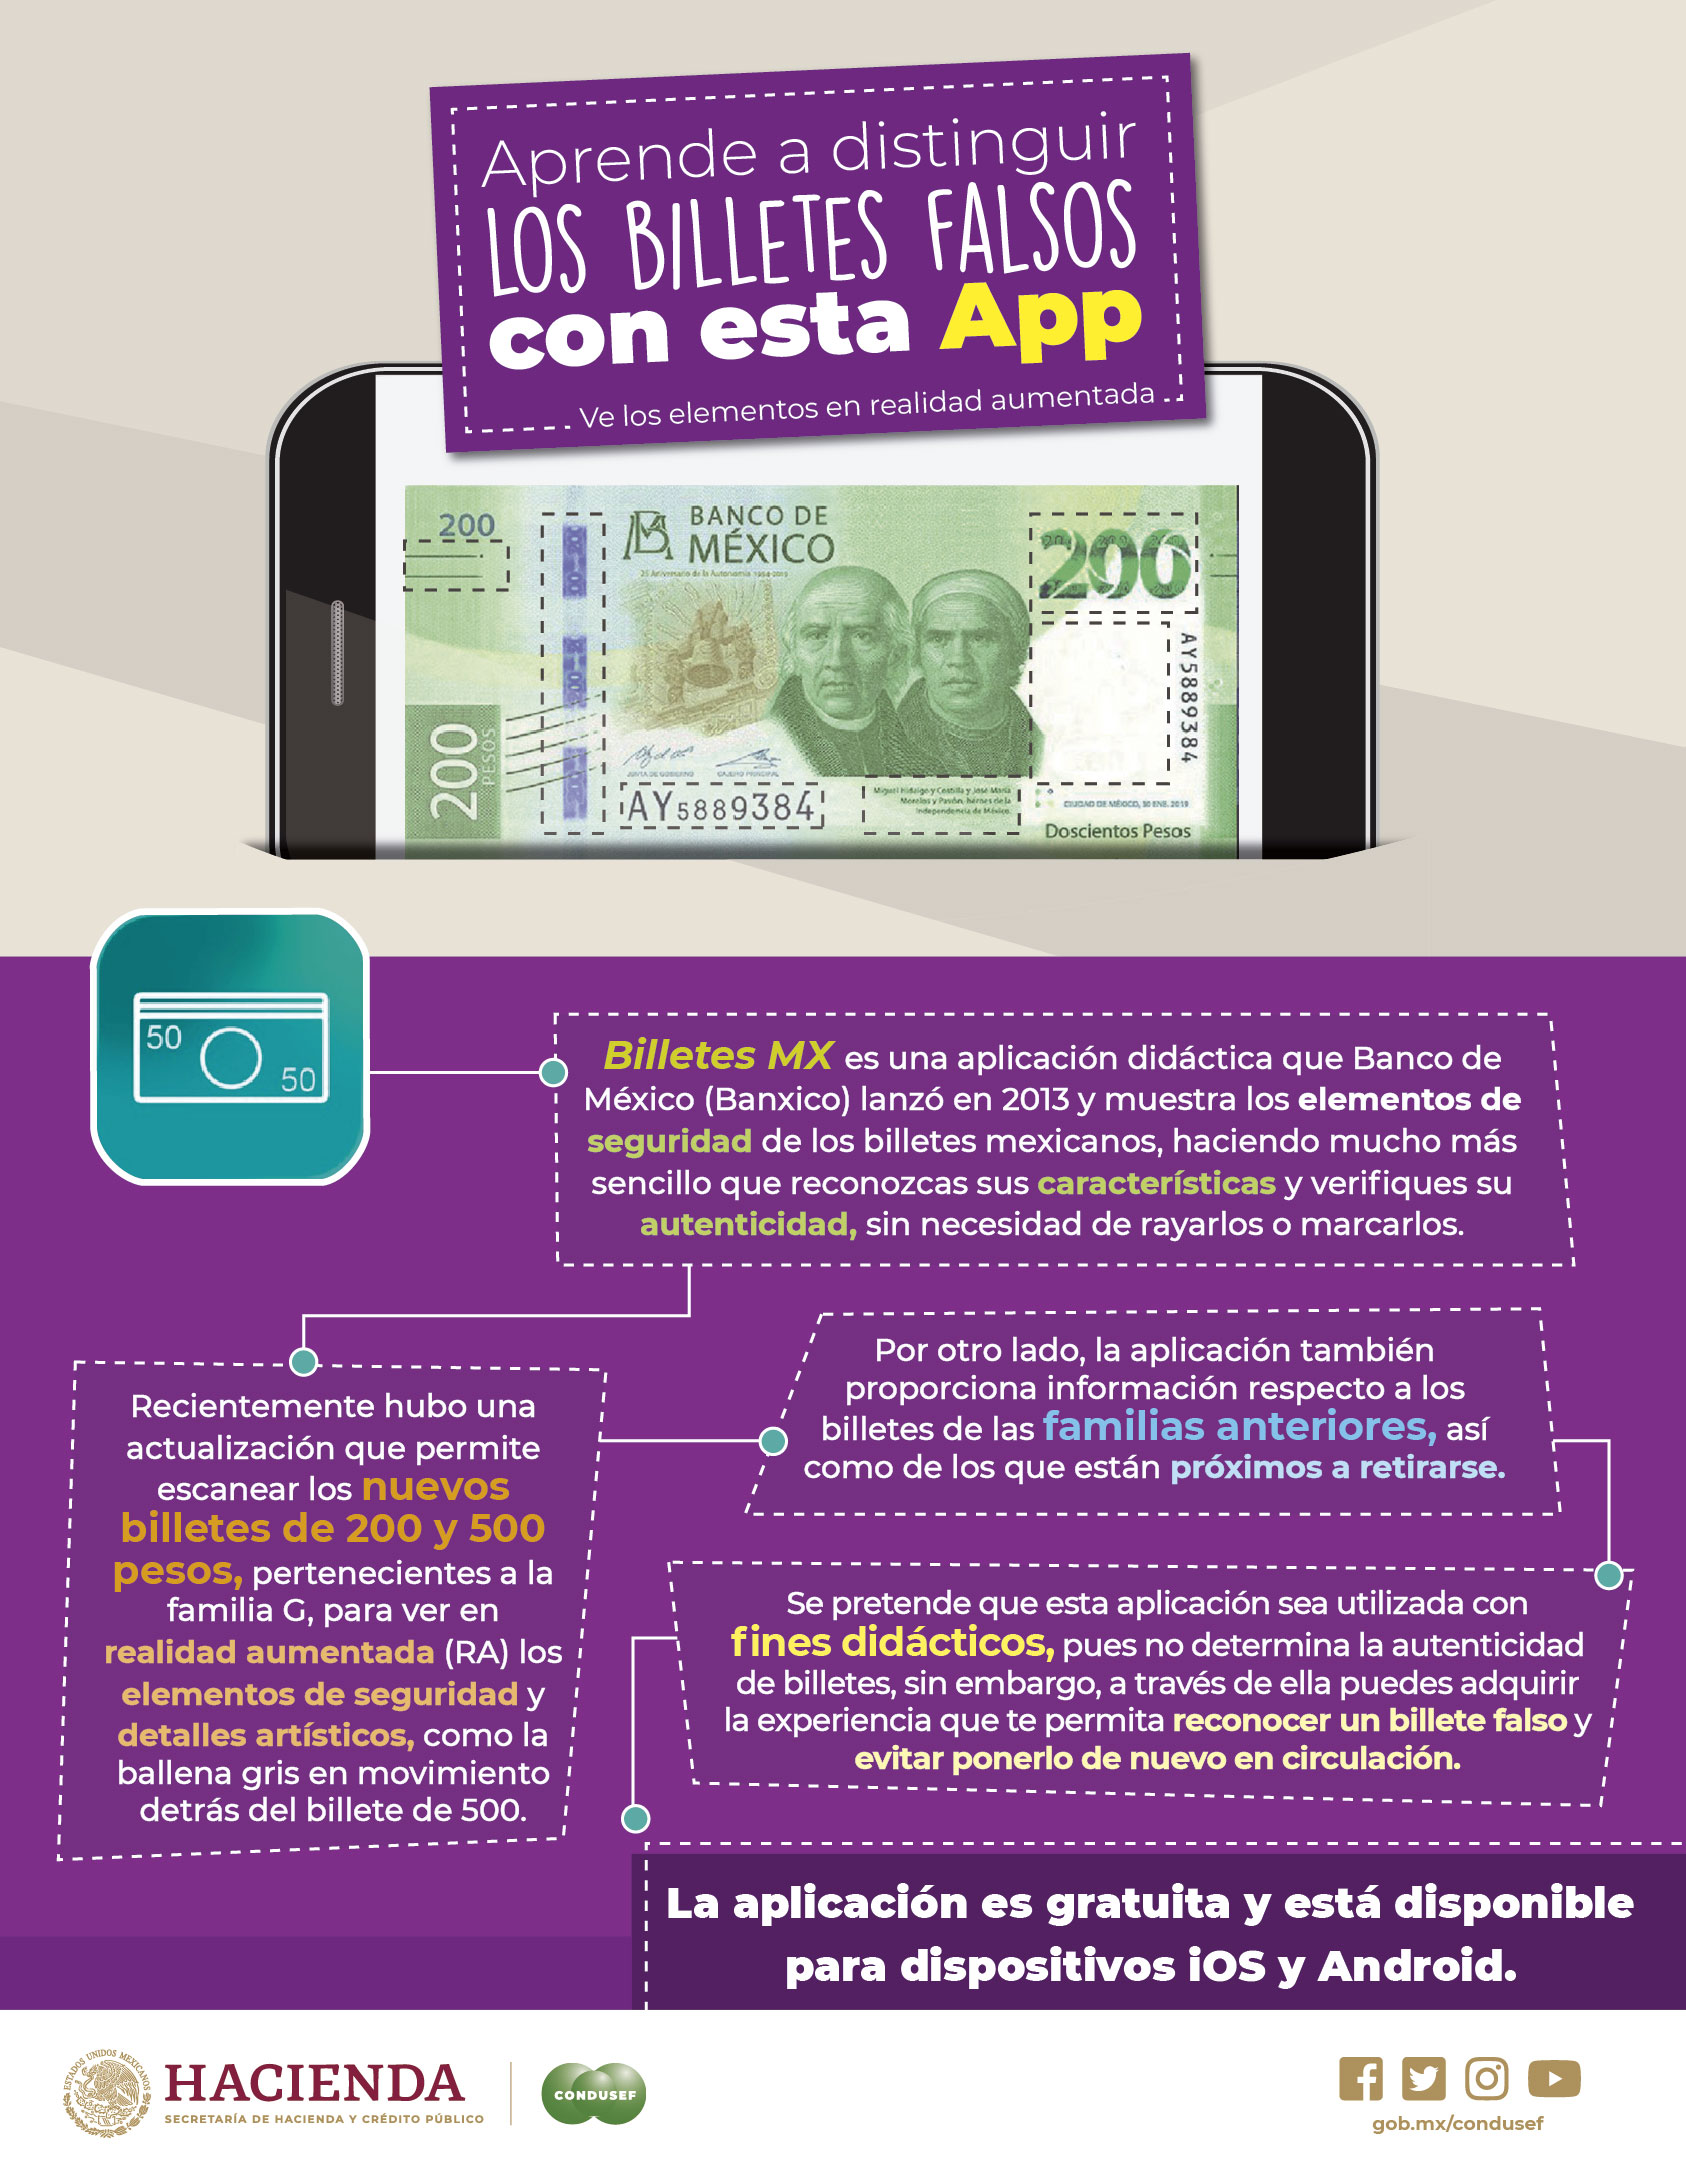 /cms/uploads/image/file/527977/Aprende_a_distinguir_los_billetes_falsos_con_esta_app-01.jpg